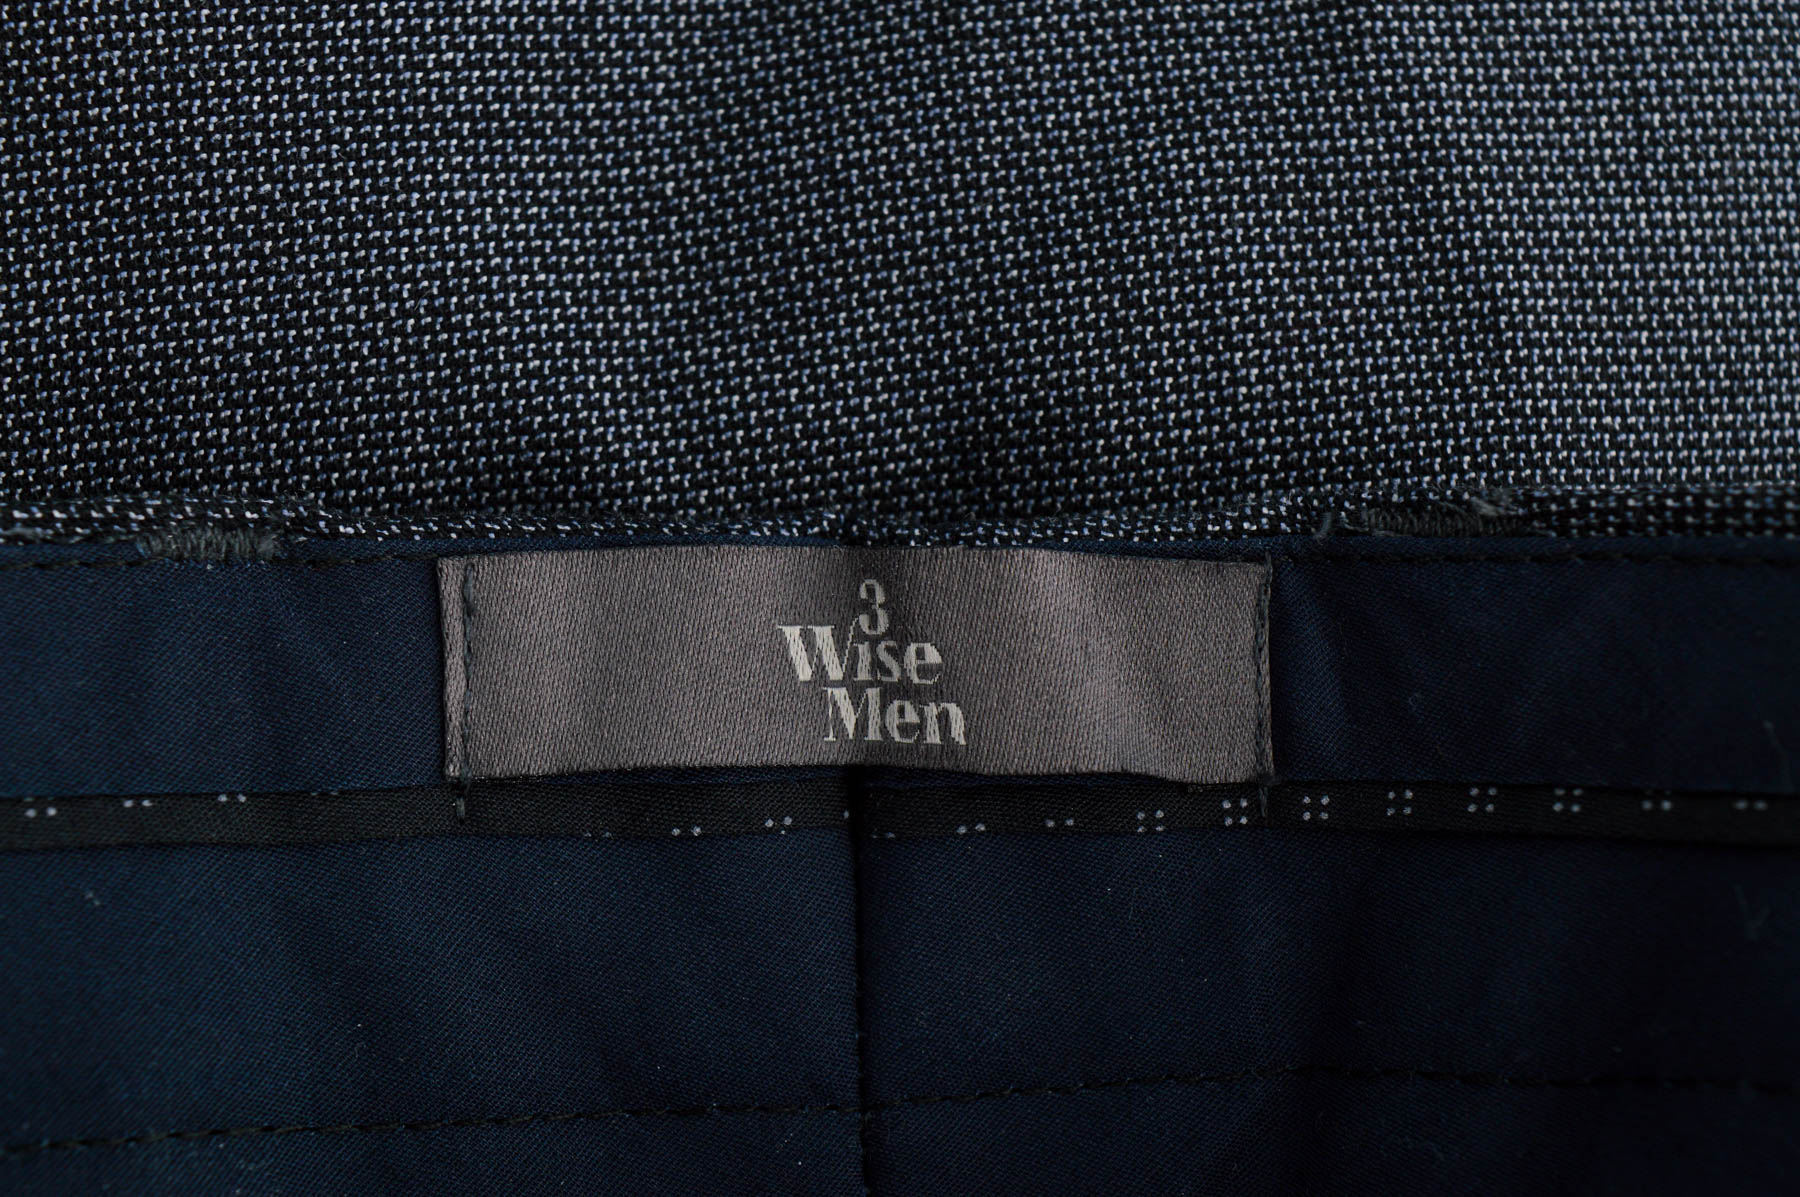 Мъжки панталон - 3 Wise Men - 2